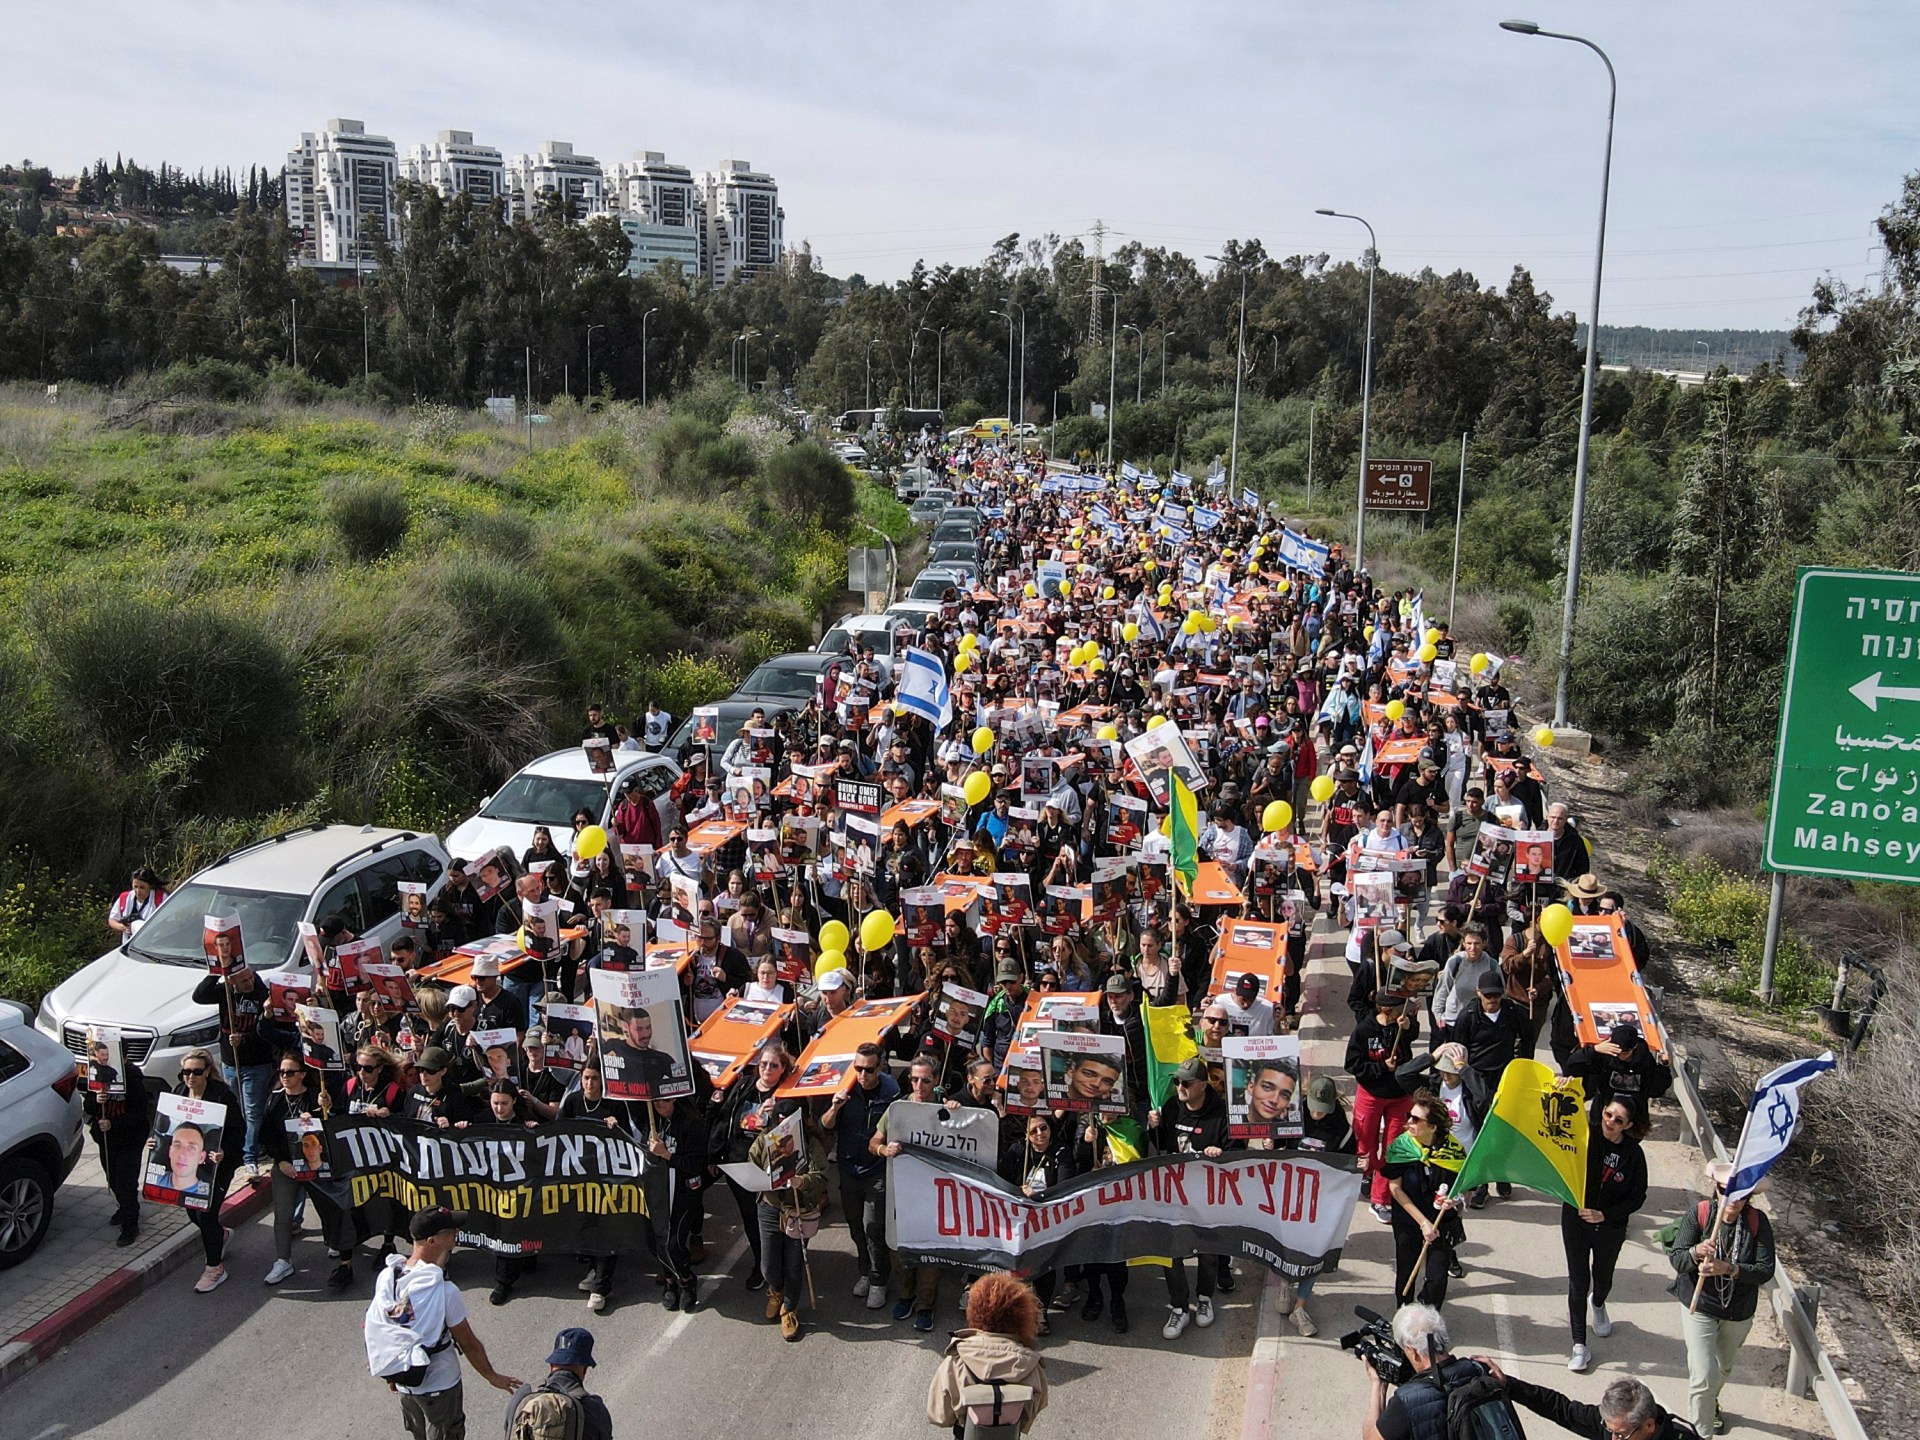 مظاهرات في إسرائيل تطالب بصفقة تبادل وأخرى تدعو لوقف الحرب | أخبار – البوكس نيوز